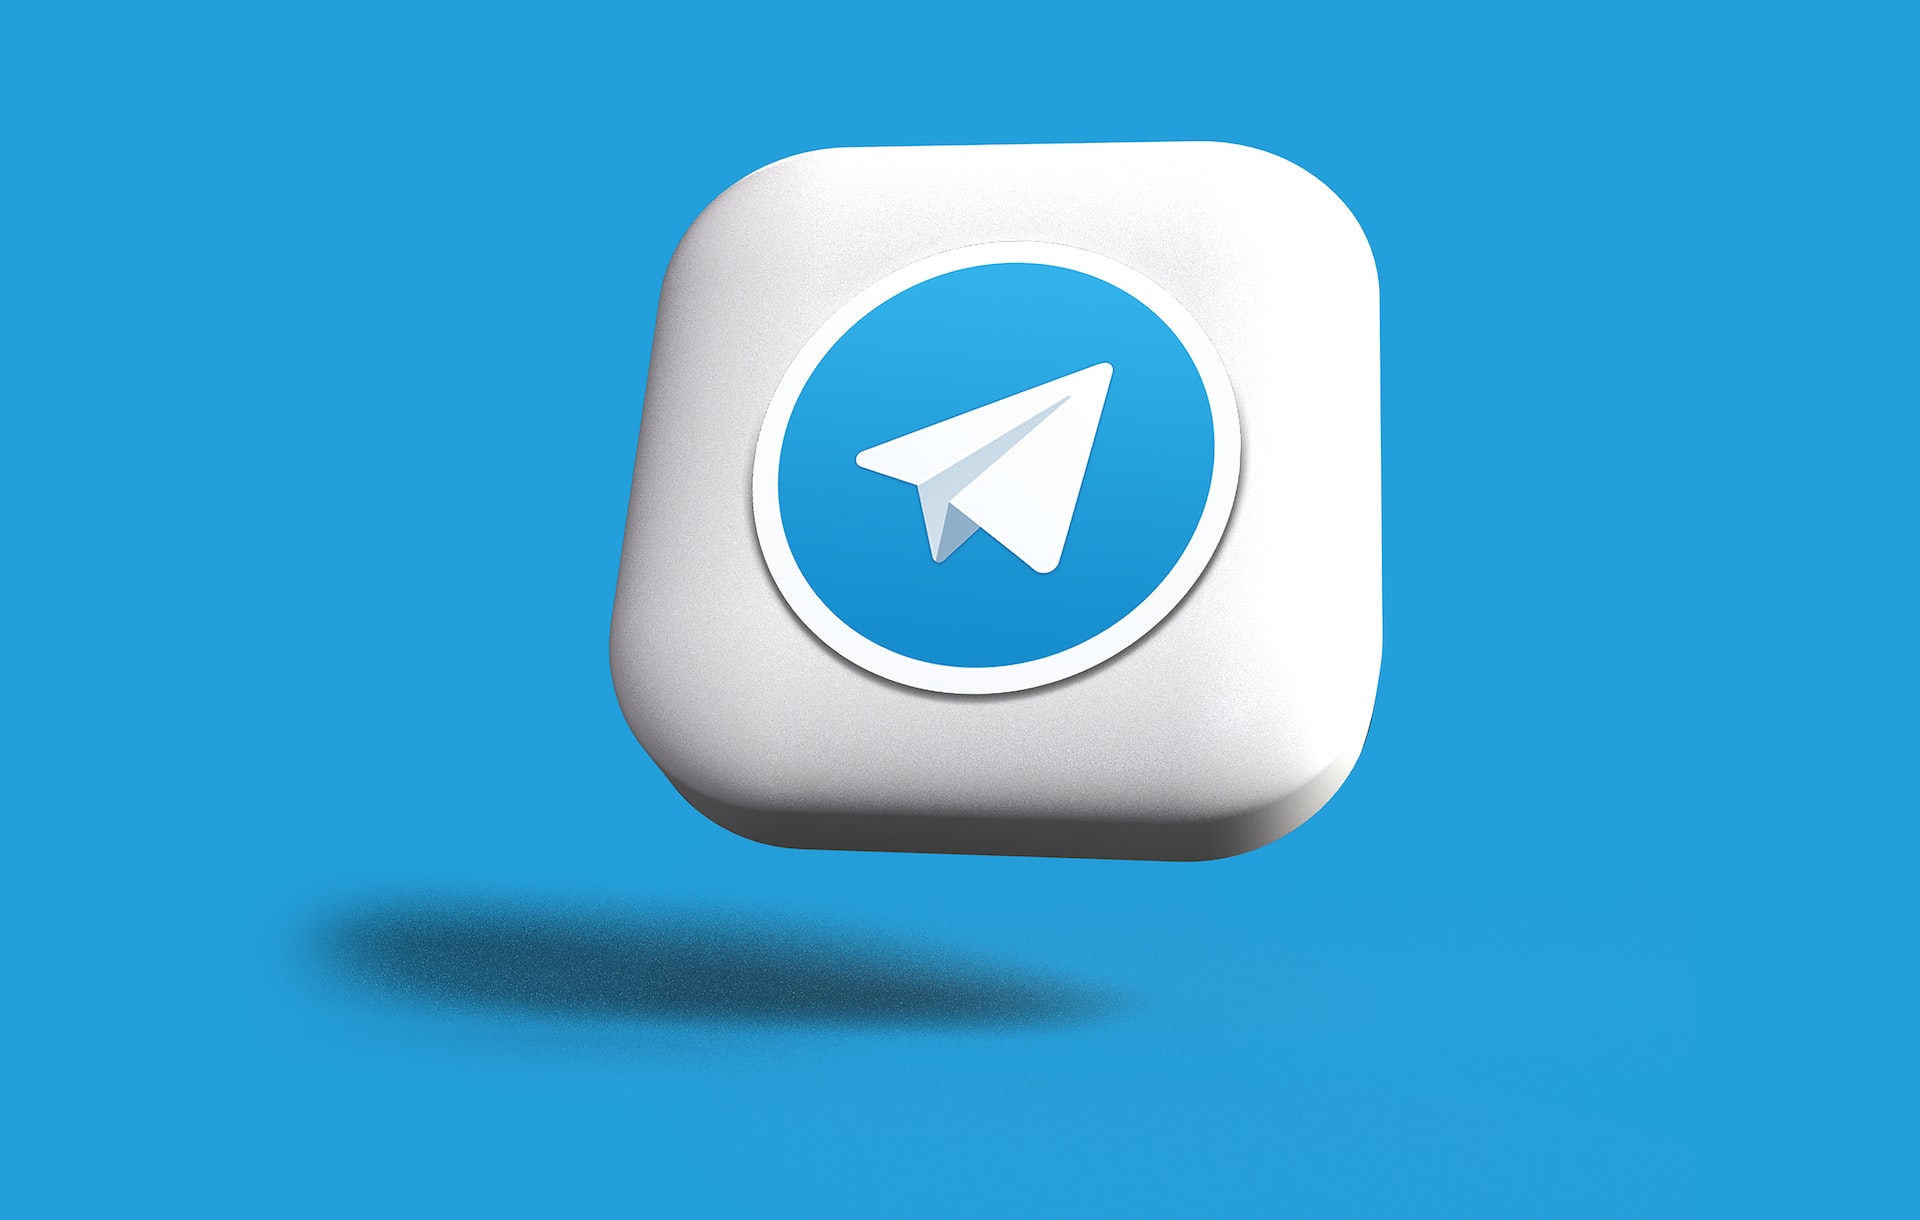 Банки активнее обращаются к Telegram-ботам для общения с клиентами